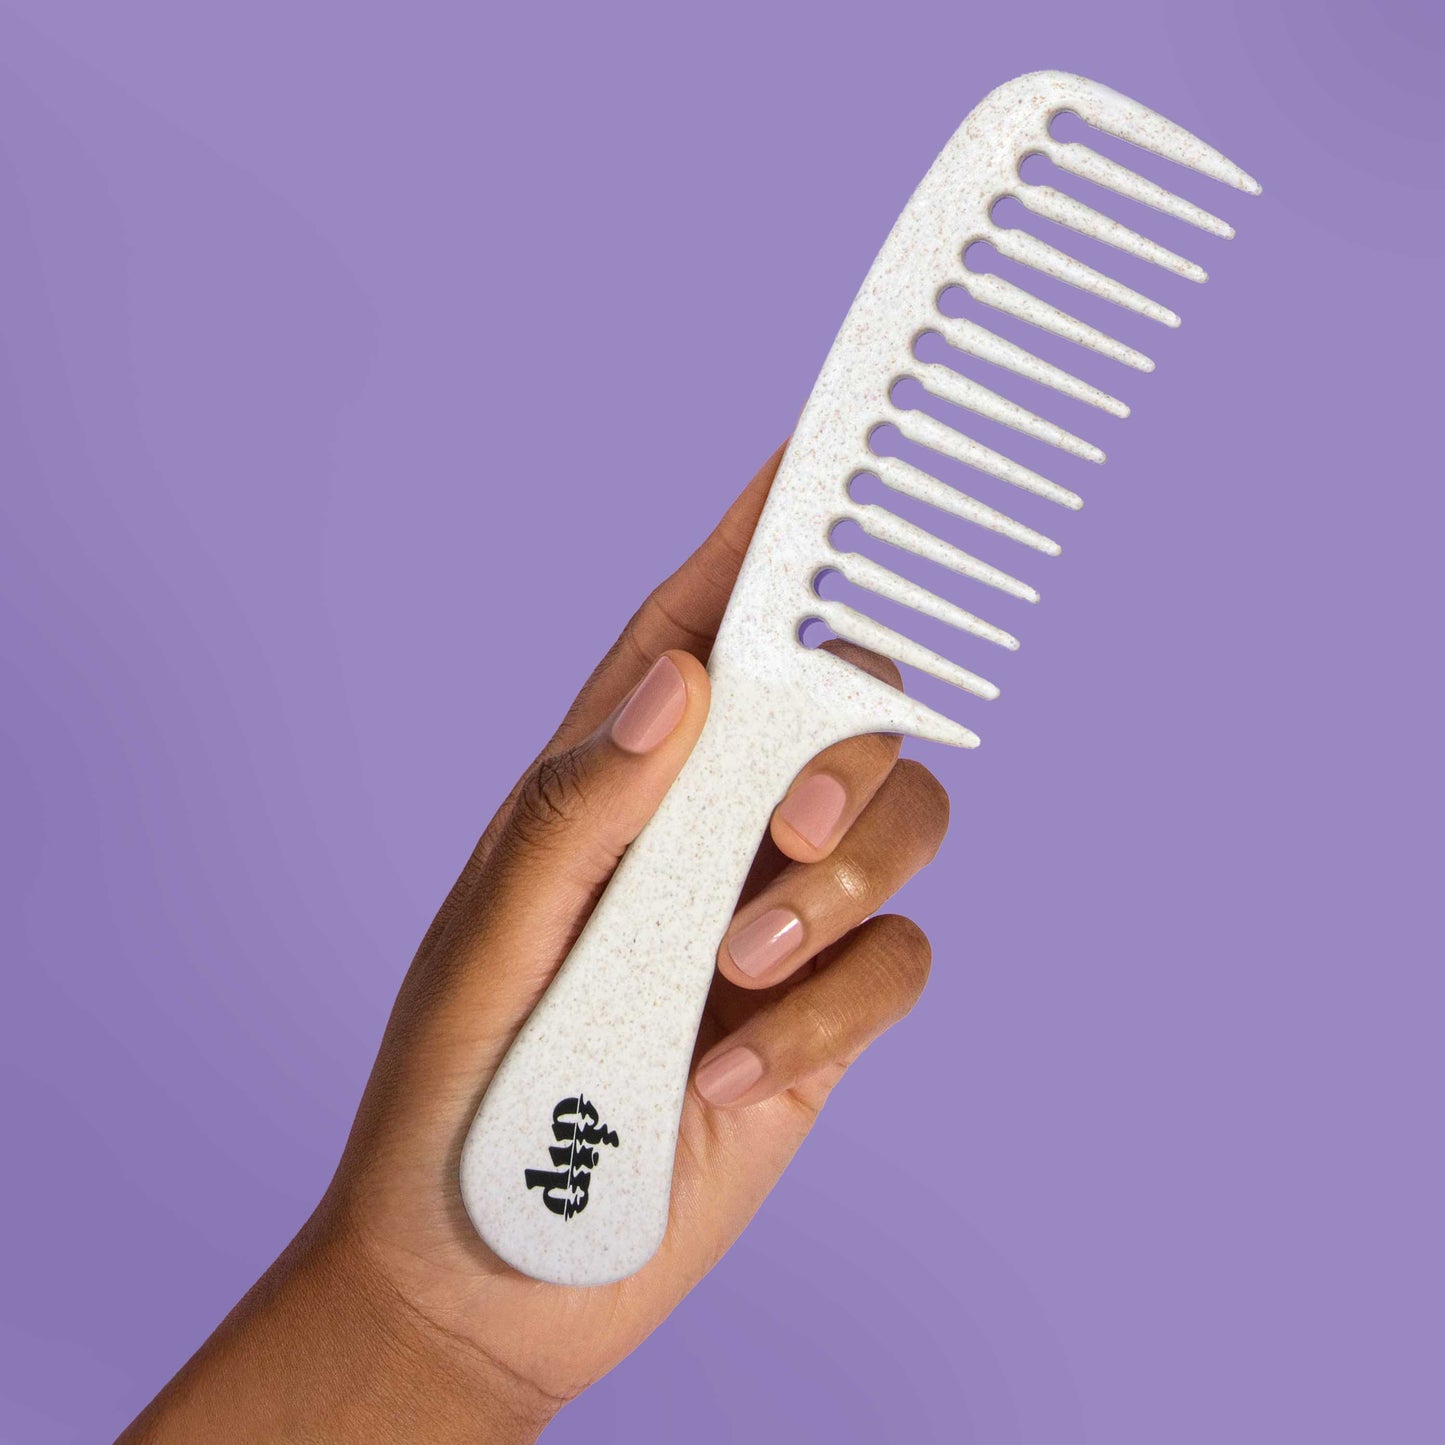 Dip - Full Size Detangling Comb : Curly or Hi-Volume Hair